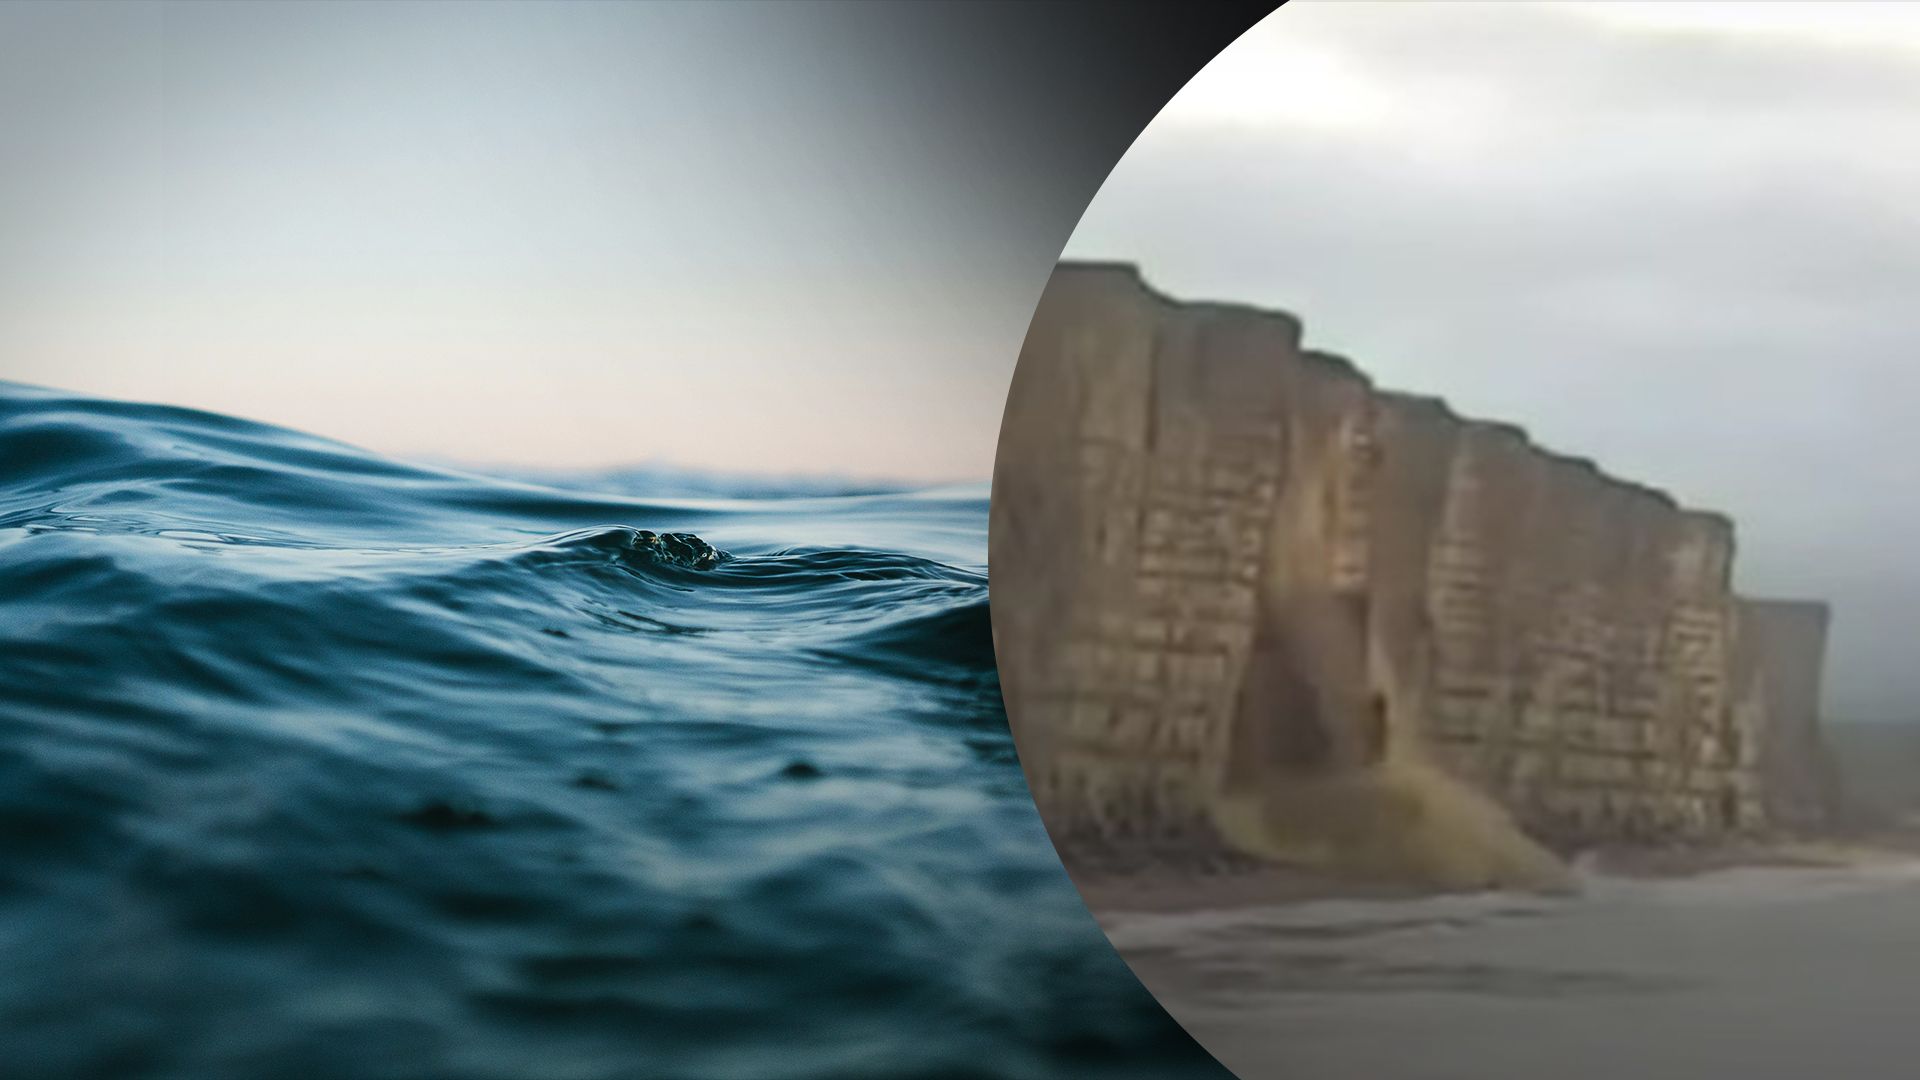 Величезна скеля обвалилася у море – дивіться відео